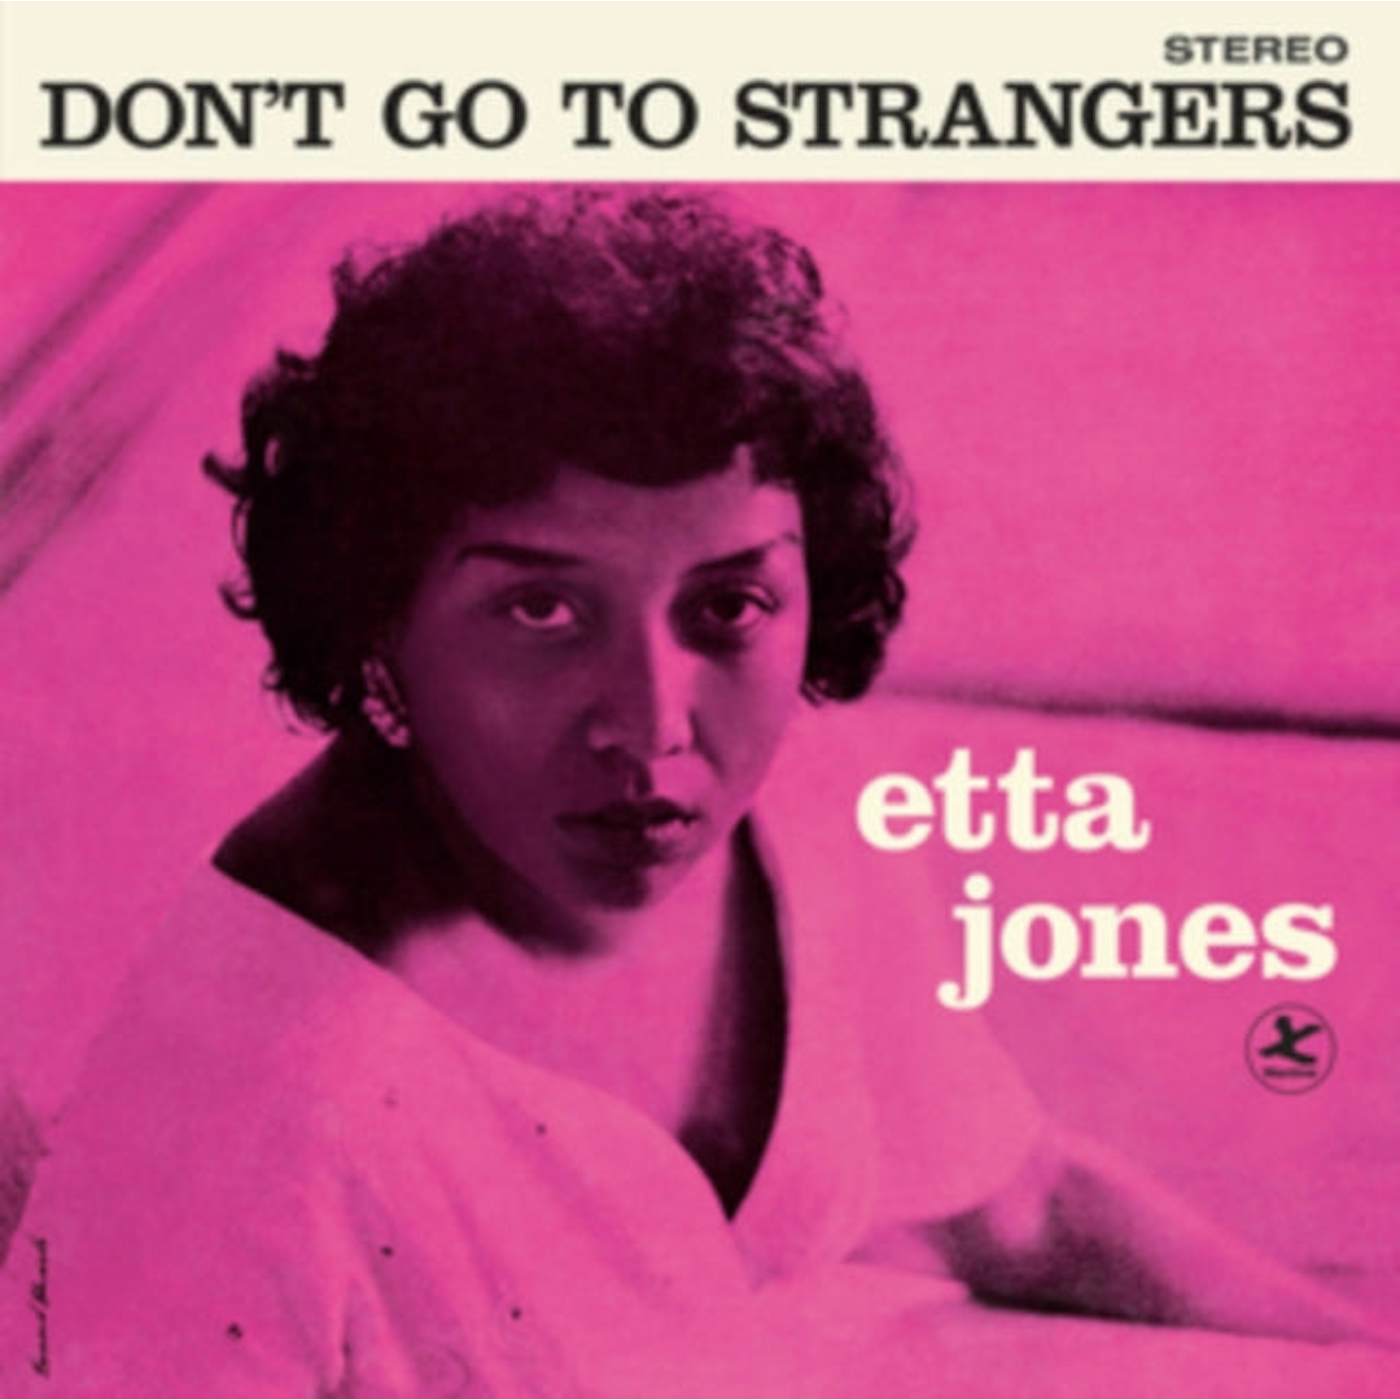 Etta Jones LP Vinyl Record  Don't Go To Strangers (+3 Bonus Tracks) (Blue Vinyl)